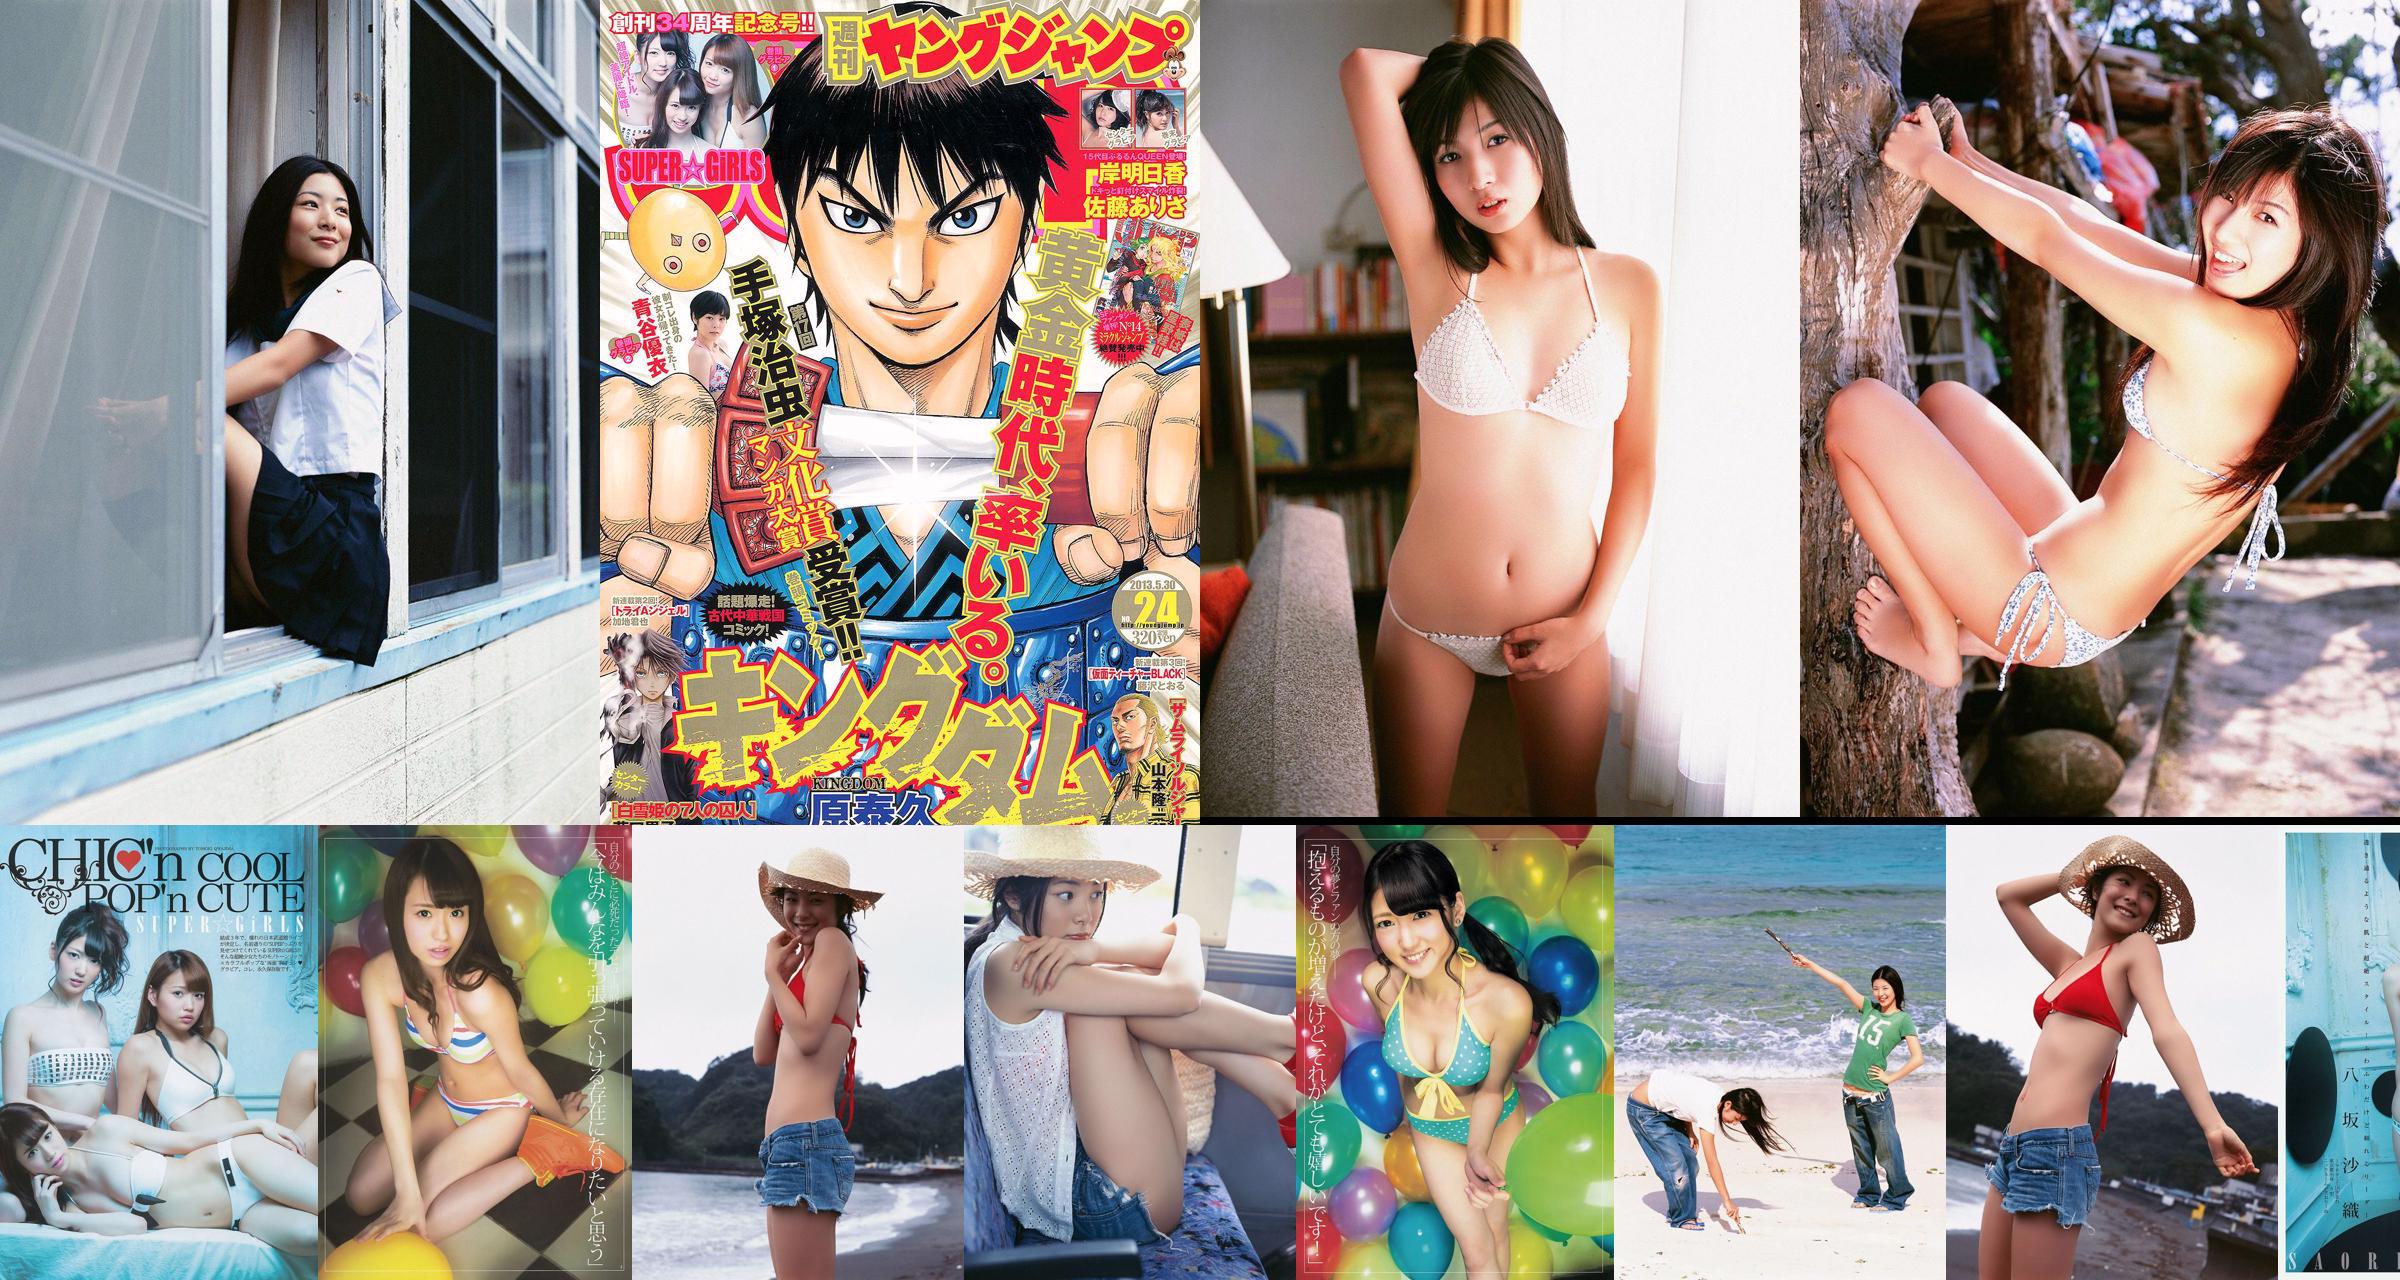 SUPER ☆ GiRLS Yui Aoya Asuka Kishi Arisa Sato [Weekly Young Jump] 2013 No.24 Photograph No.560d9f Page 3